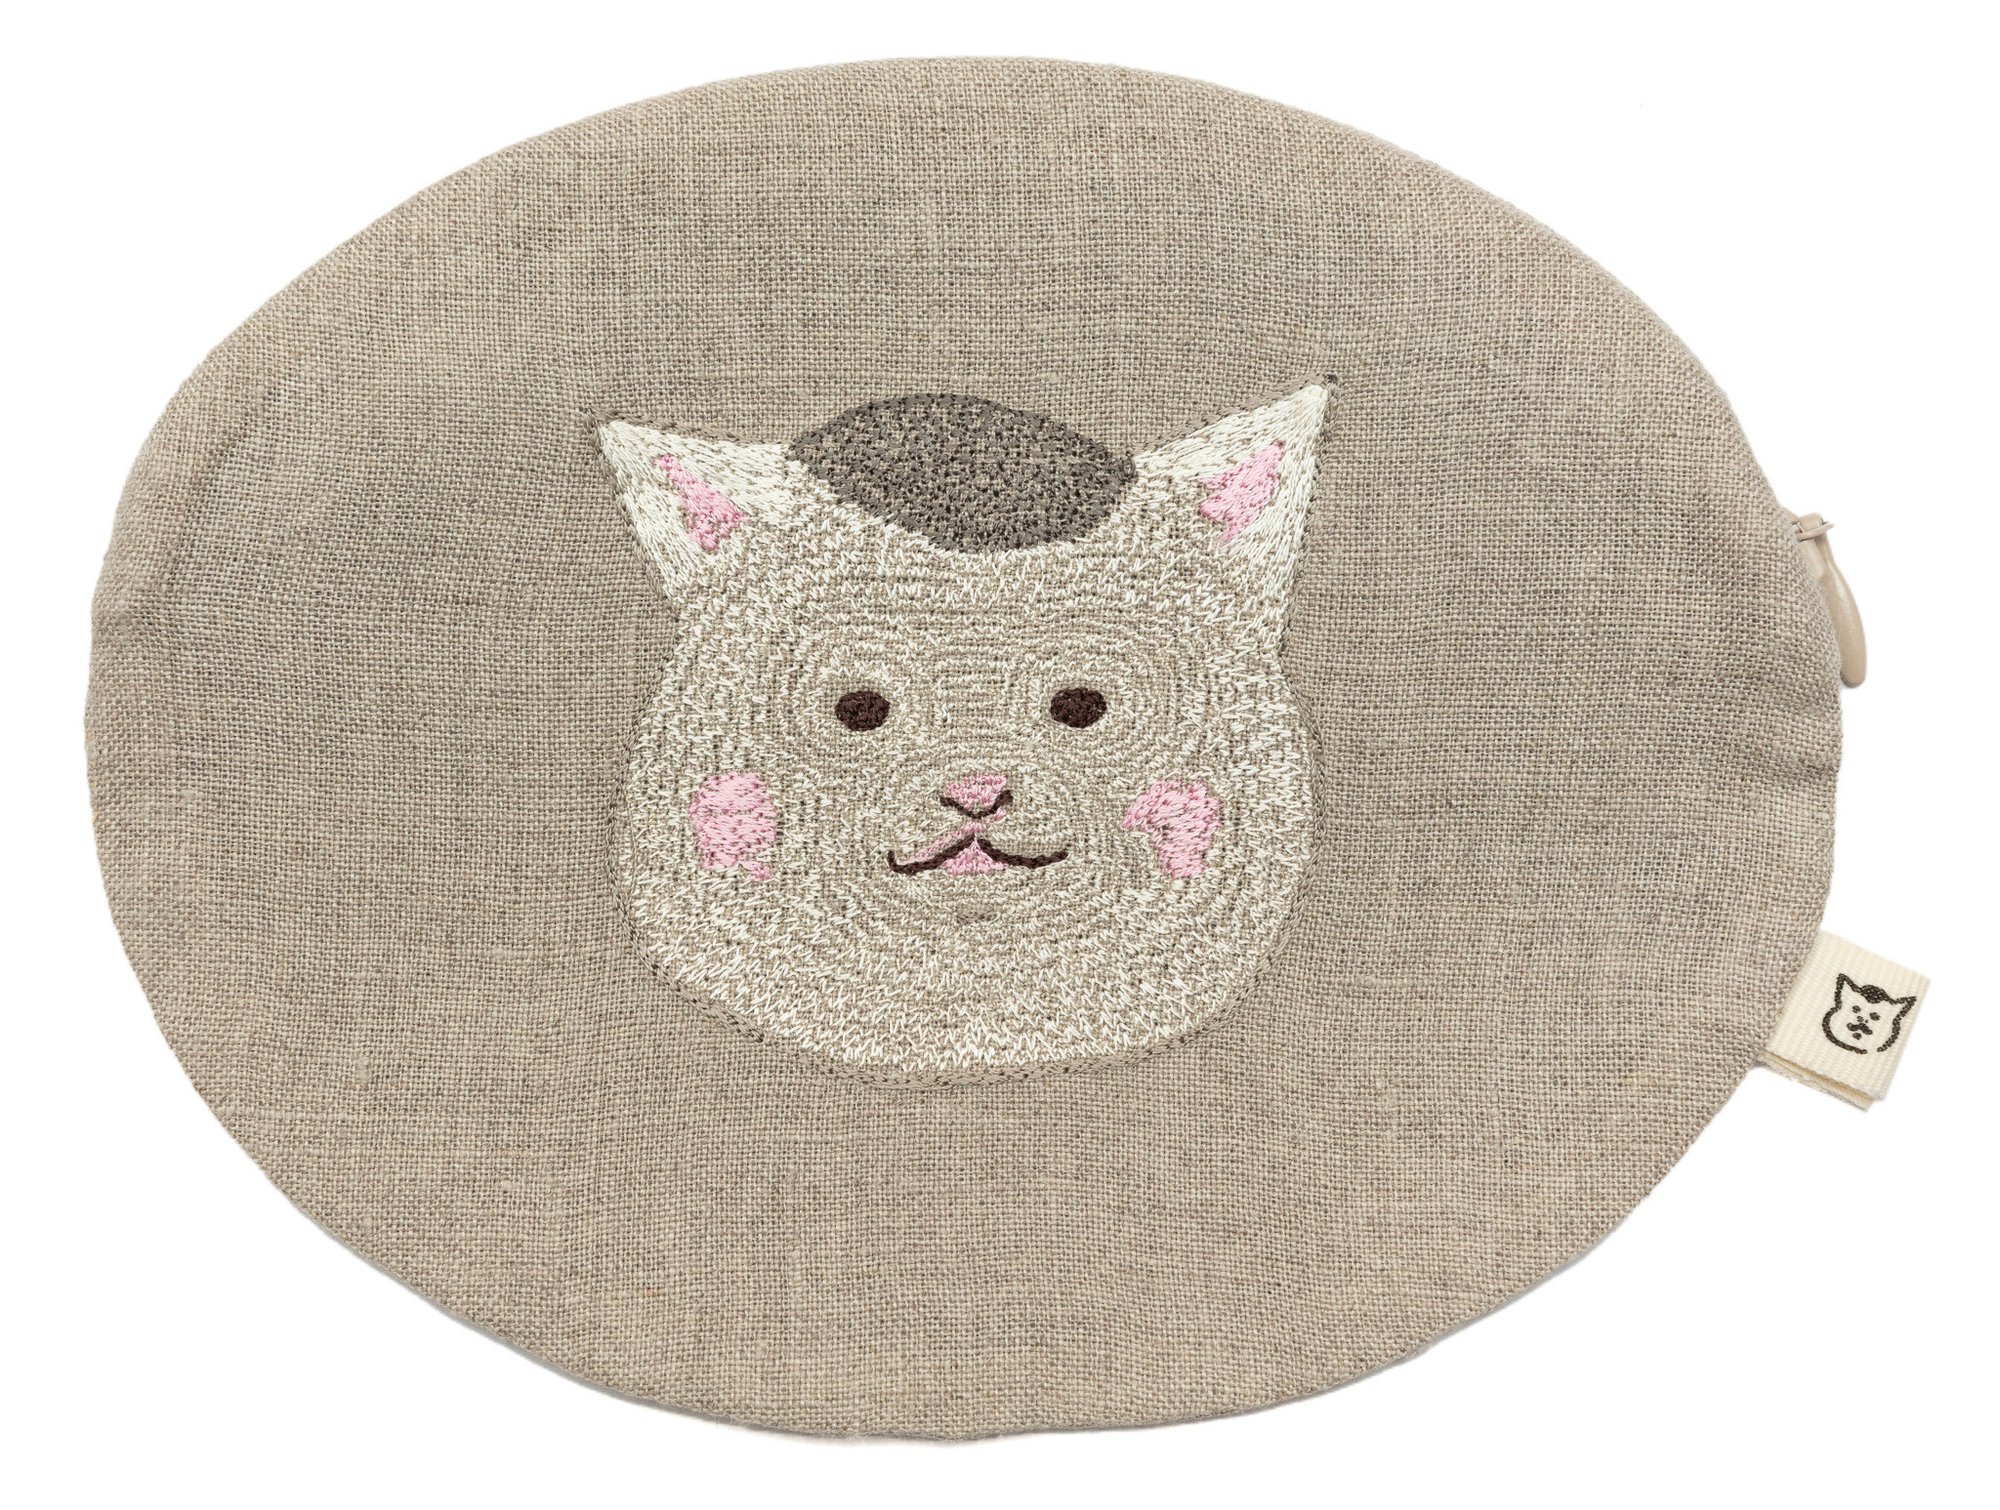 「きょうの猫村さん」を刺繍したクッションやポーチが発売、コーラル・アンド・ タスクとコラボ